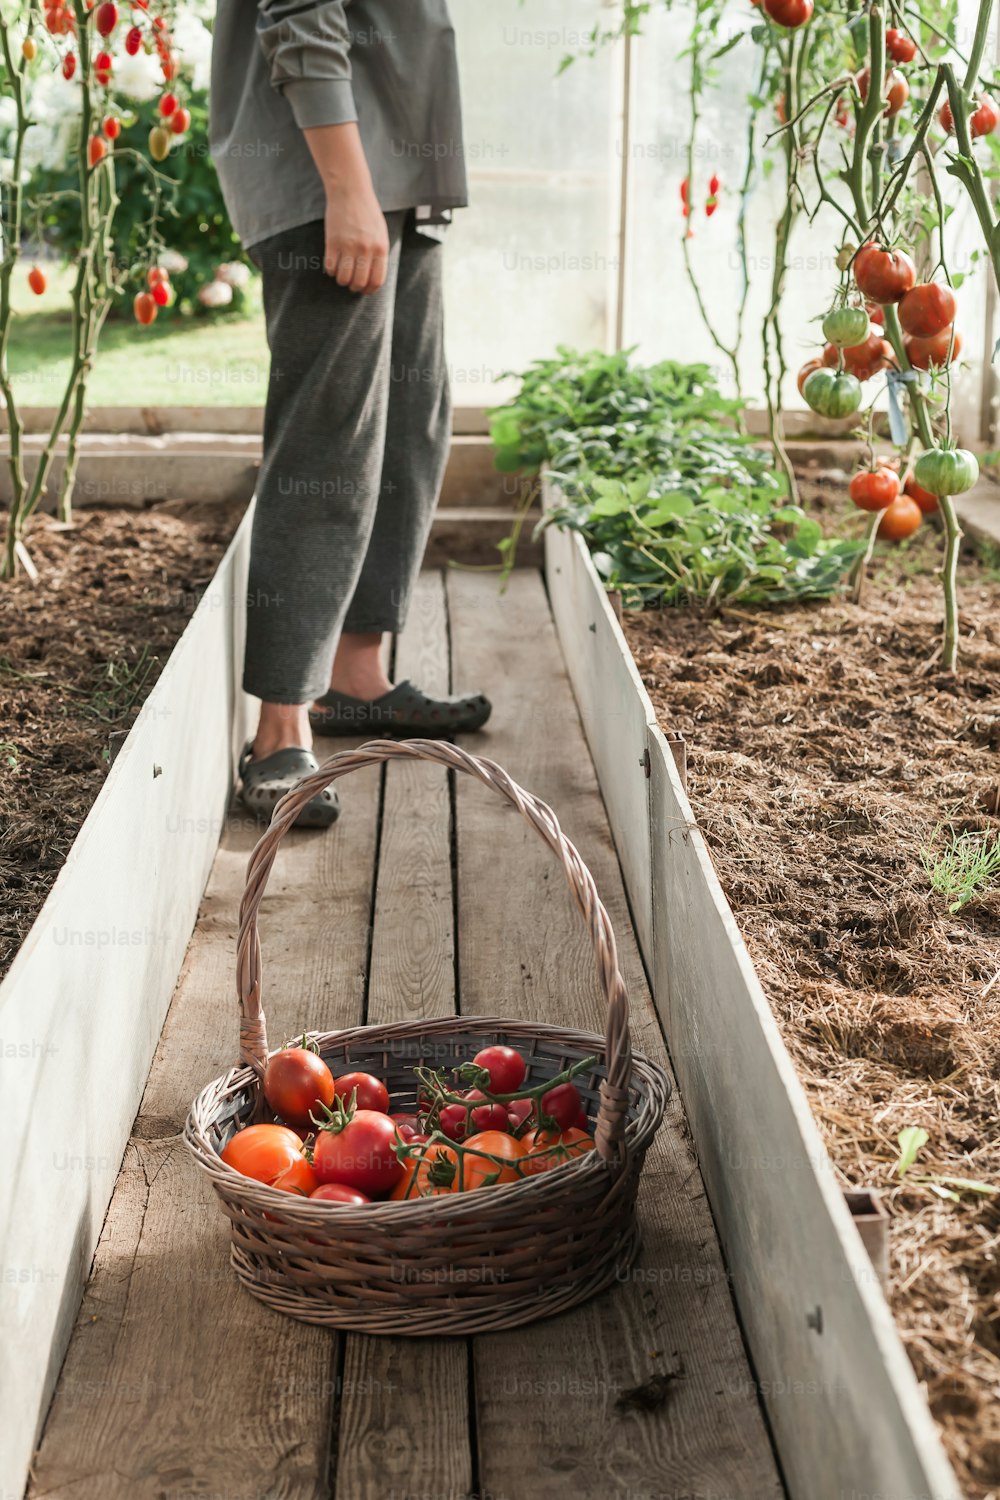 Una persona parada en un invernadero con una canasta de tomates